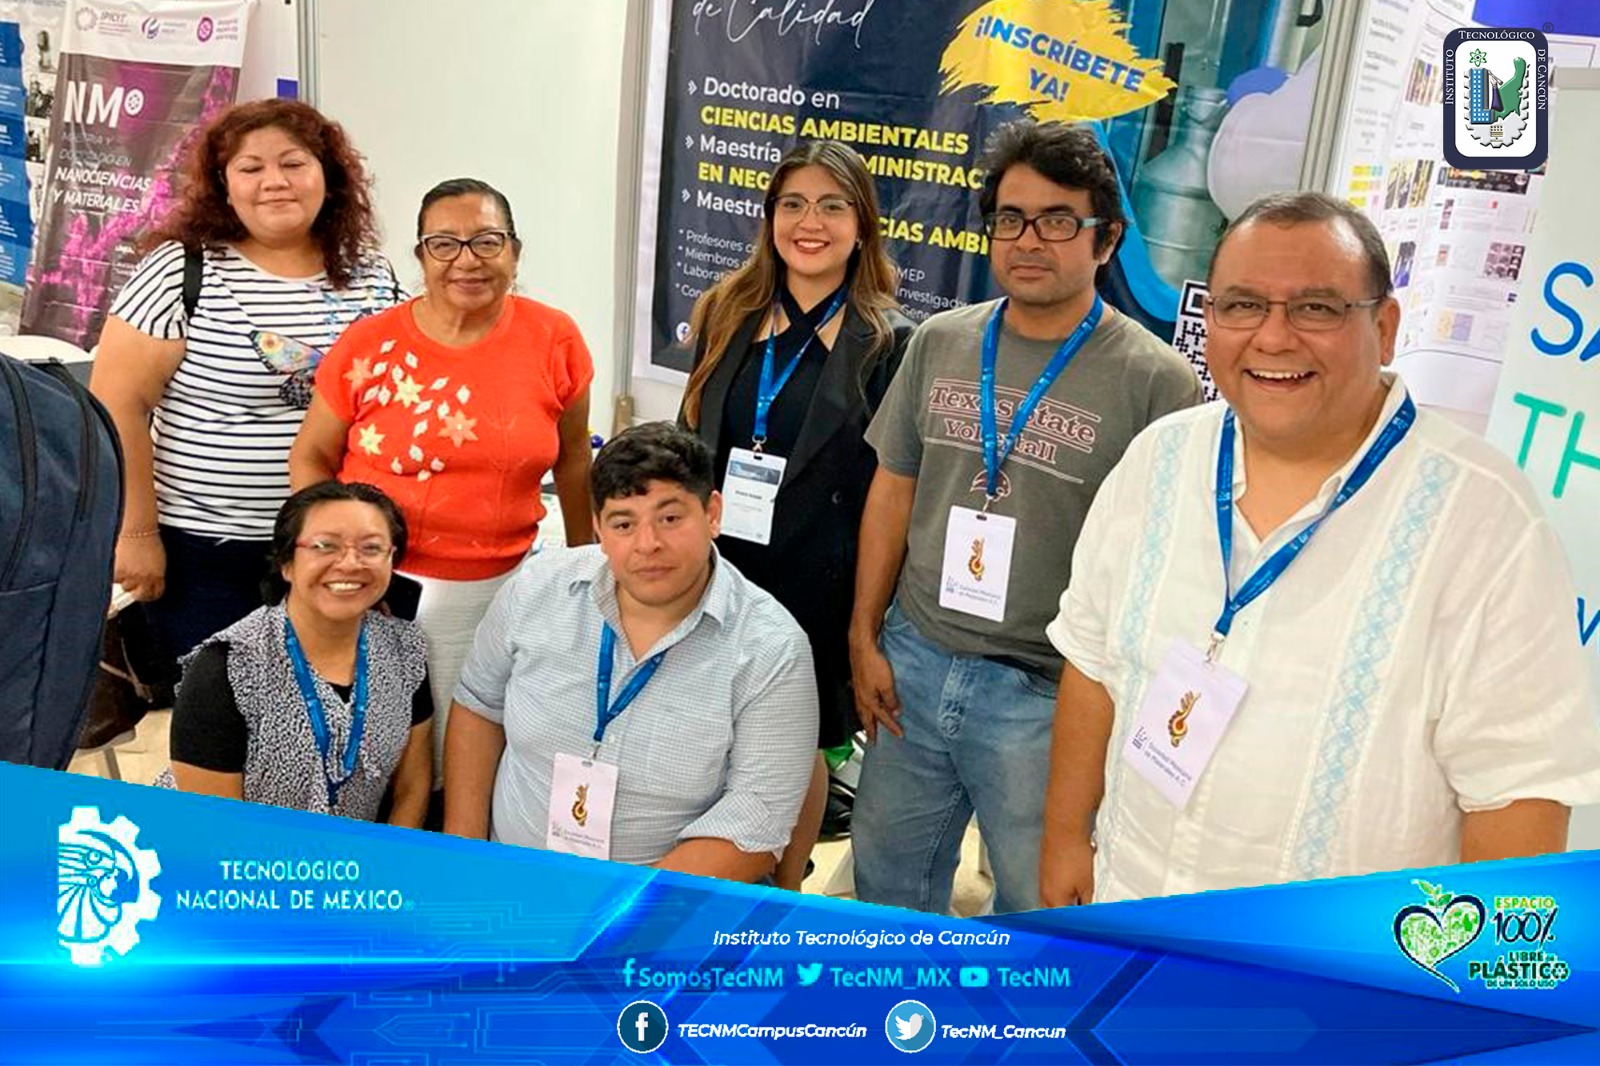 El #TecNMcampusCancún participó del 14 a l6 de agosto en la Expo Posgrados